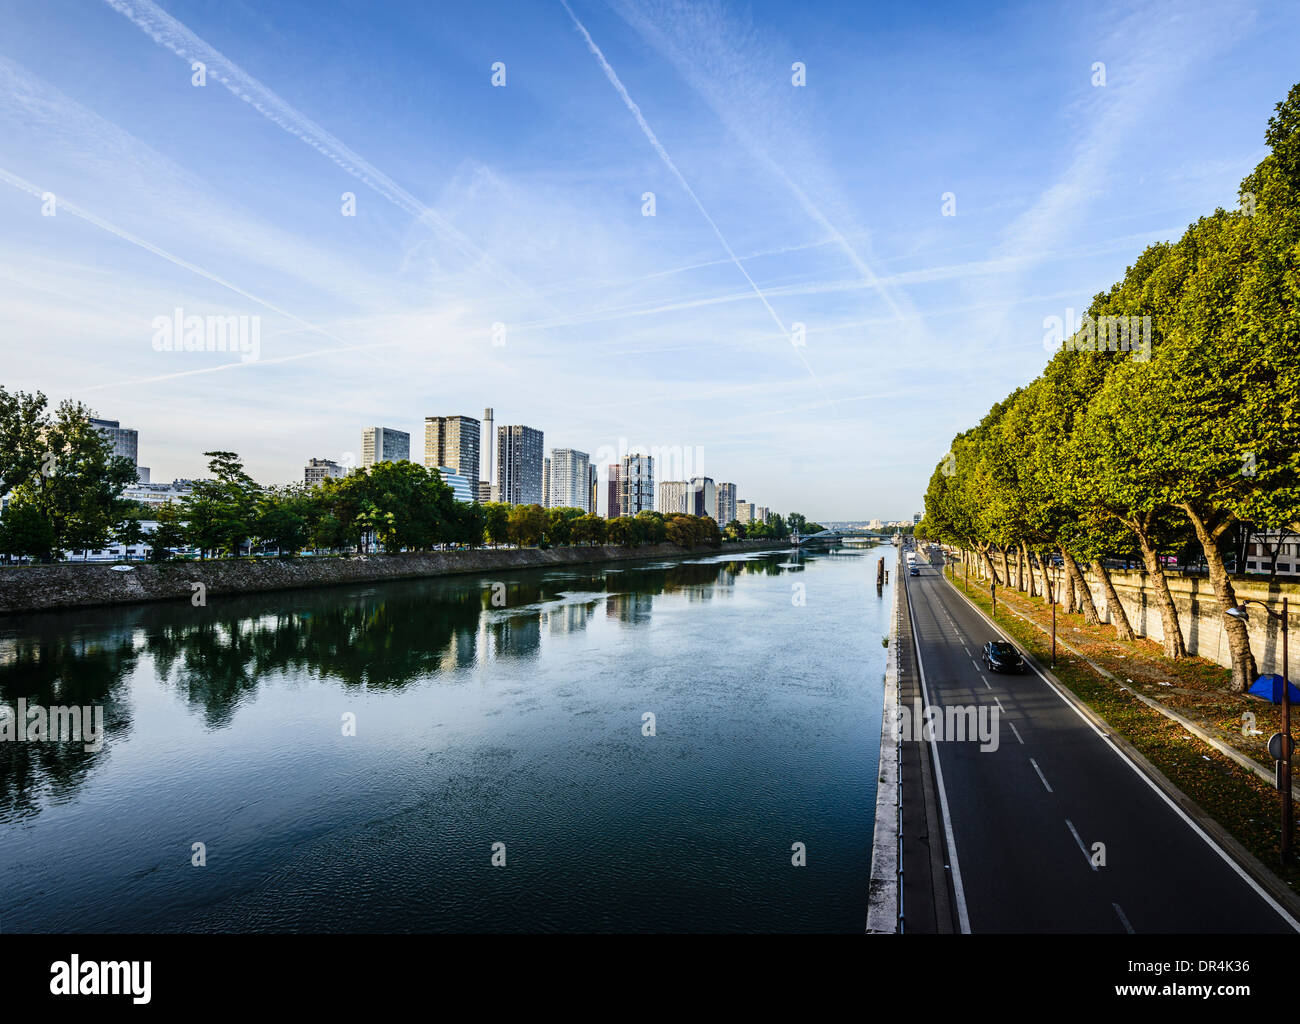 Paris city skyline along Seine River, Paris, France Stock Photo